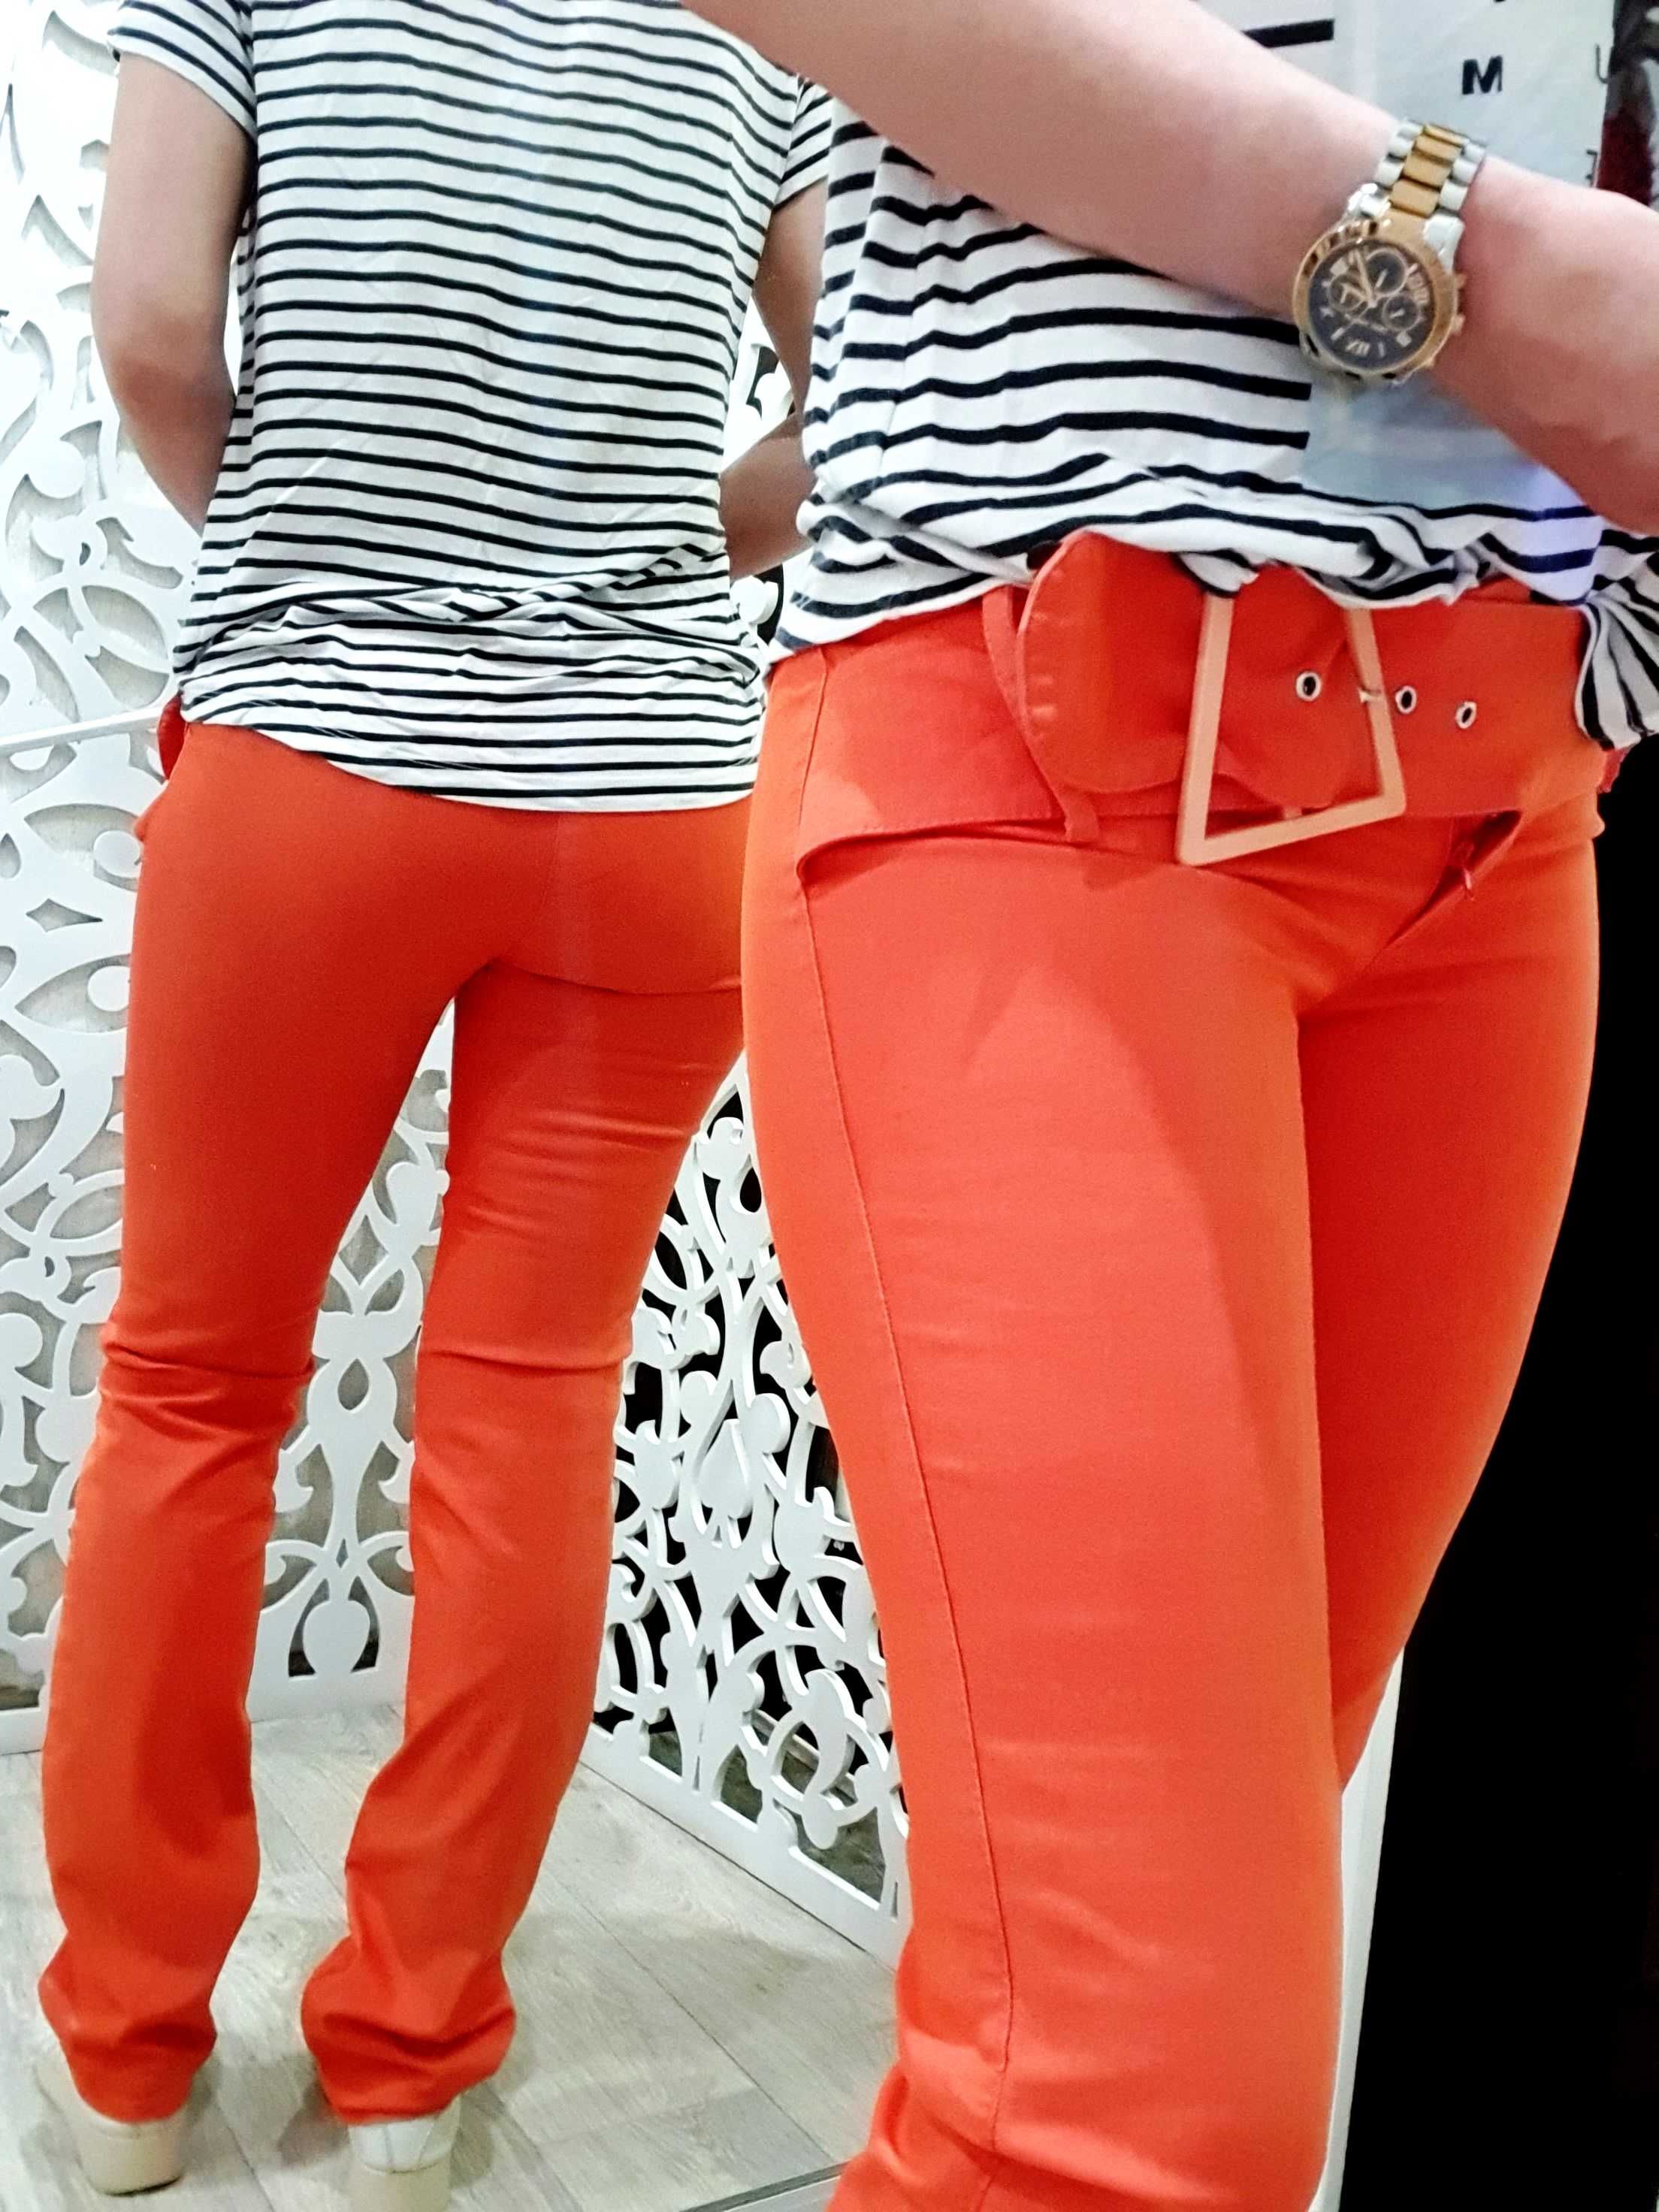 Брюки S женские яркие оранжевые аппликация бабочка Италия летние